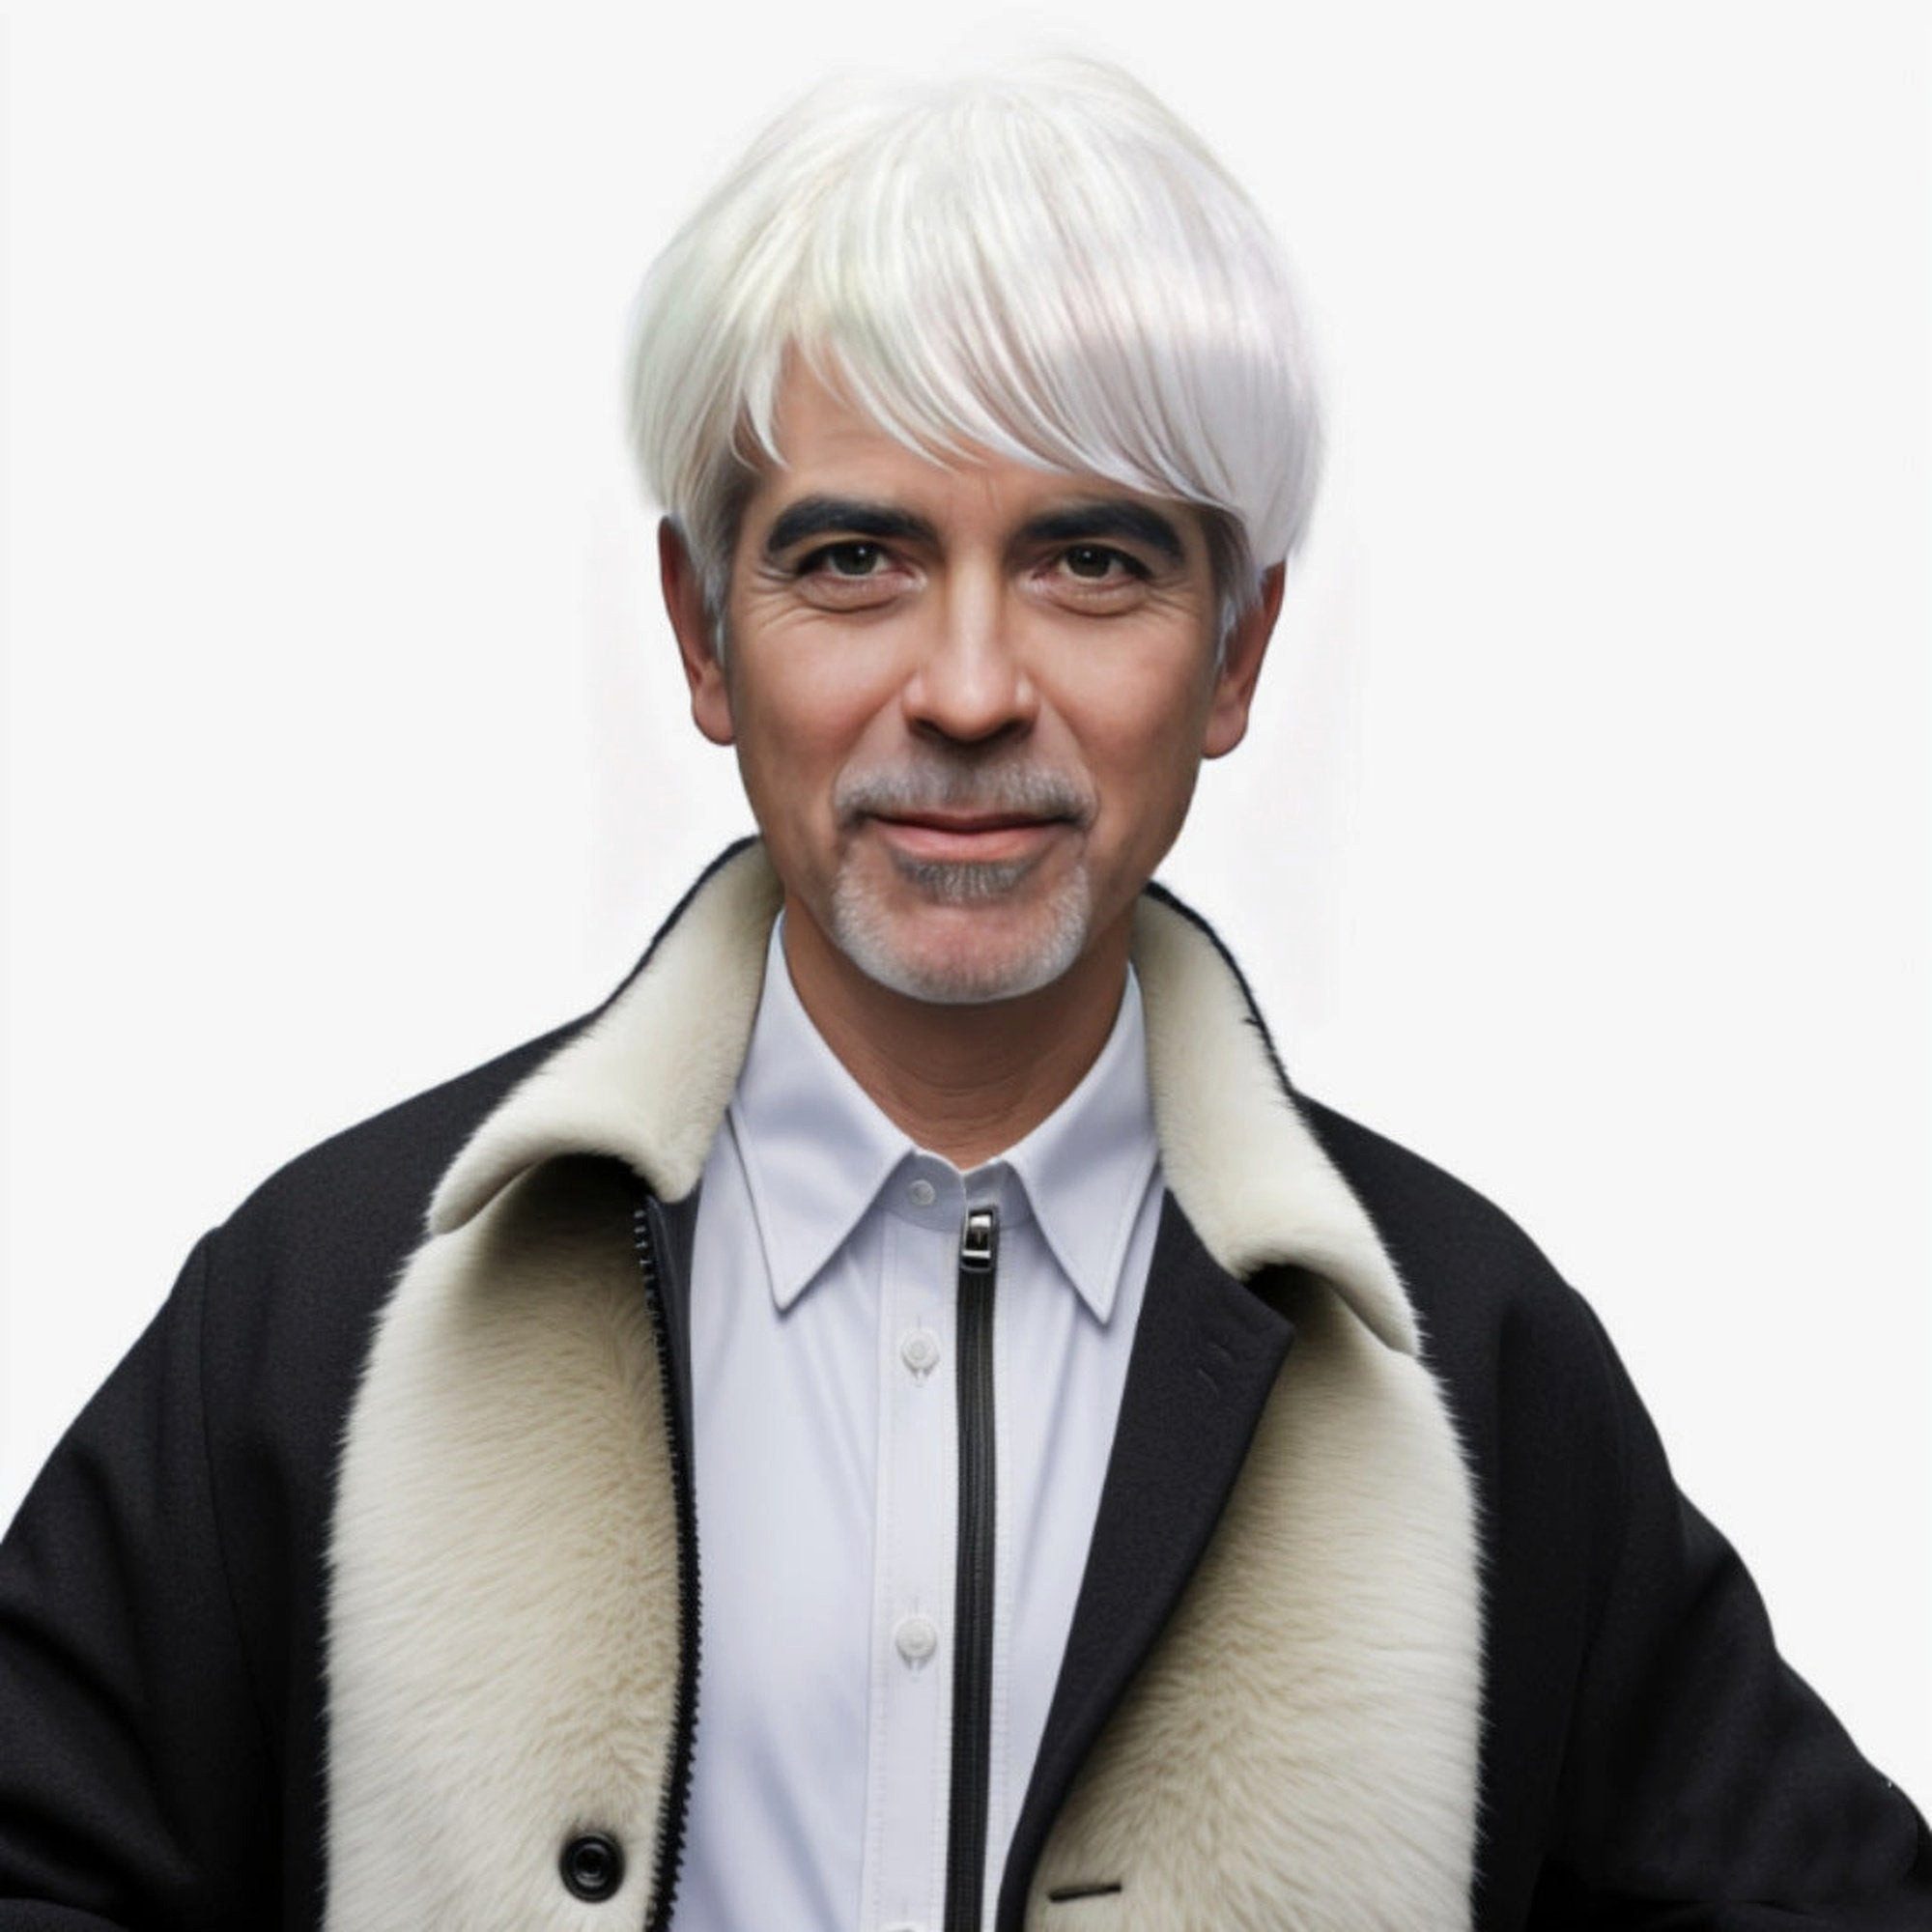 YRIIOMO Toupet Herrenperücke in reinweißer Farbe mit mittlerem bis älterem Alter, kurzes glattes Haar, weißer Netzhaarteil